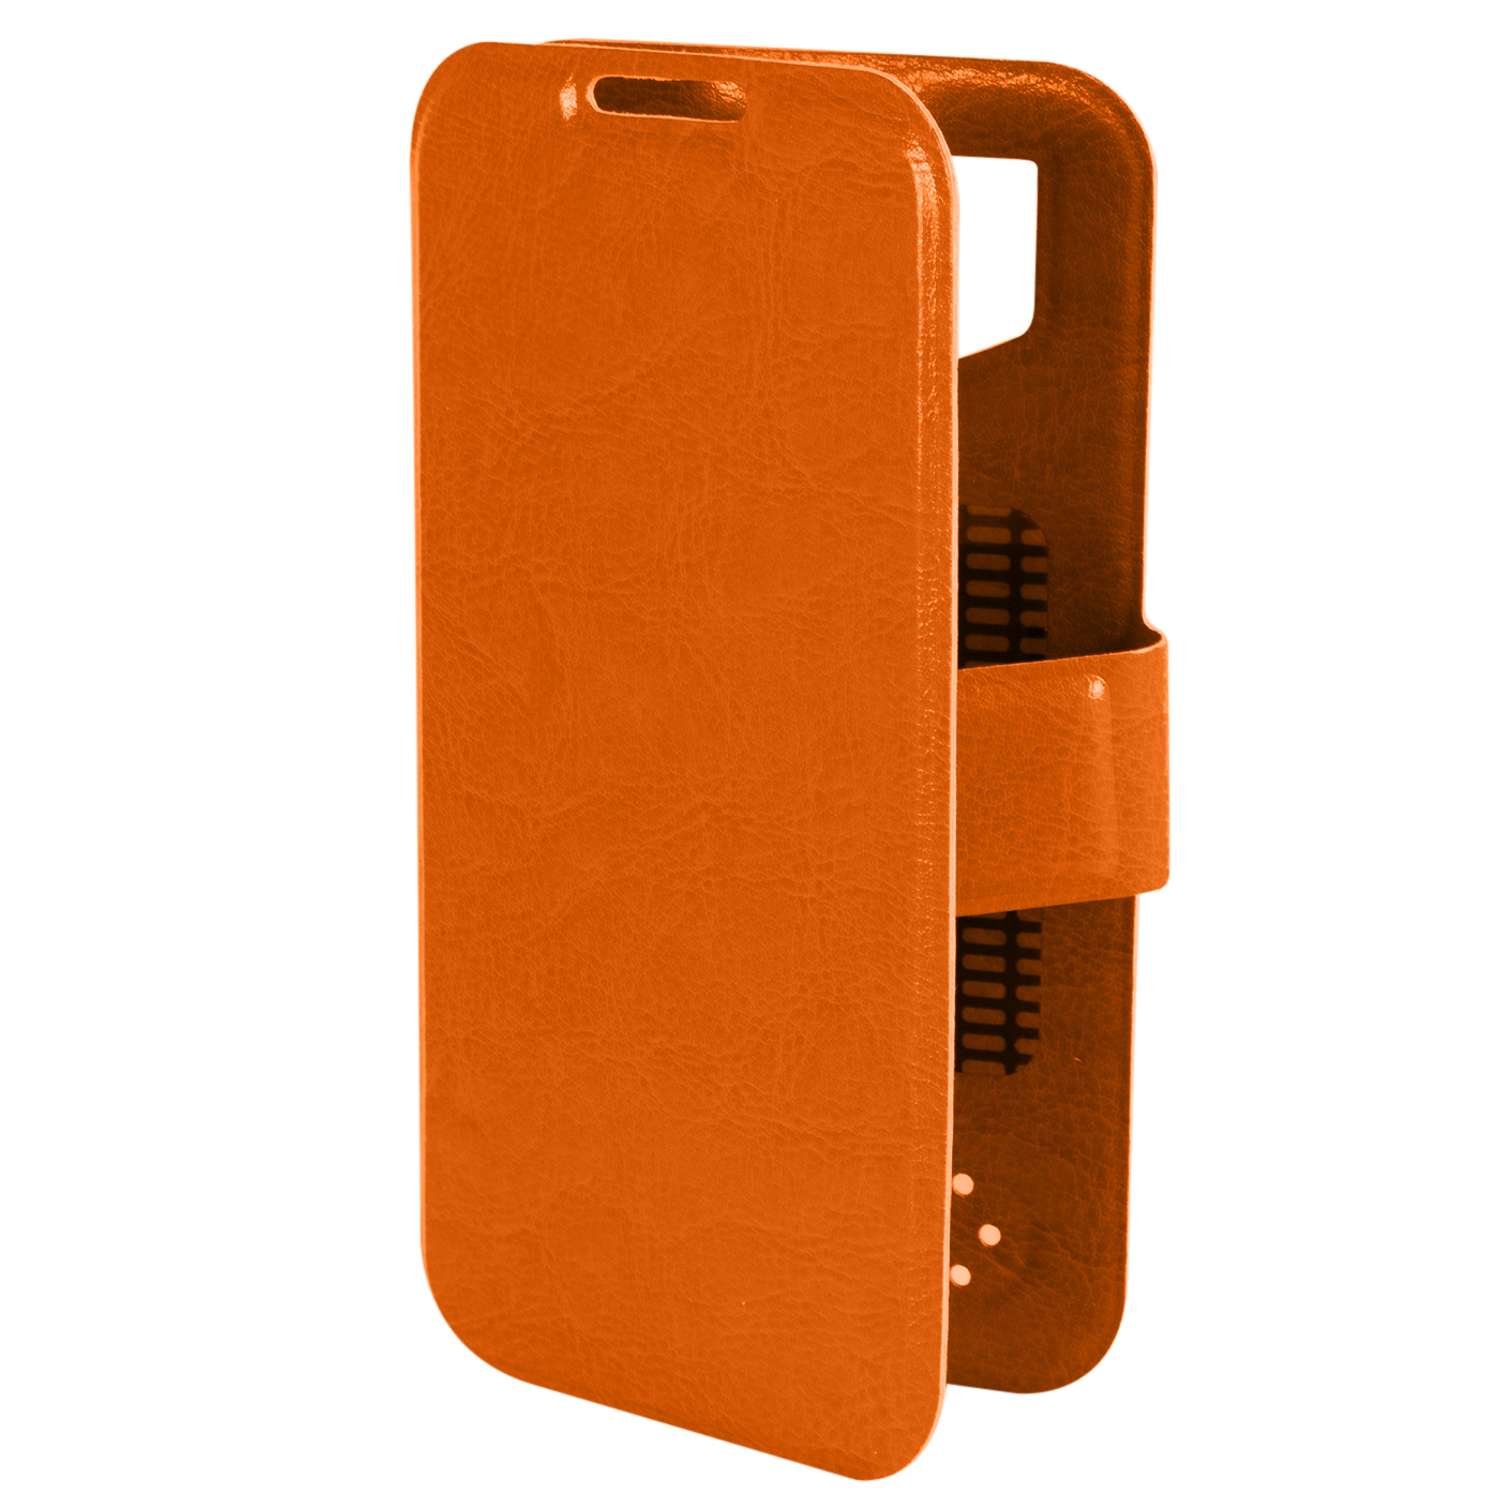 Чехол универсальный iBox Universal для телефонов 4.2-5 дюйма оранжевый - фото 1